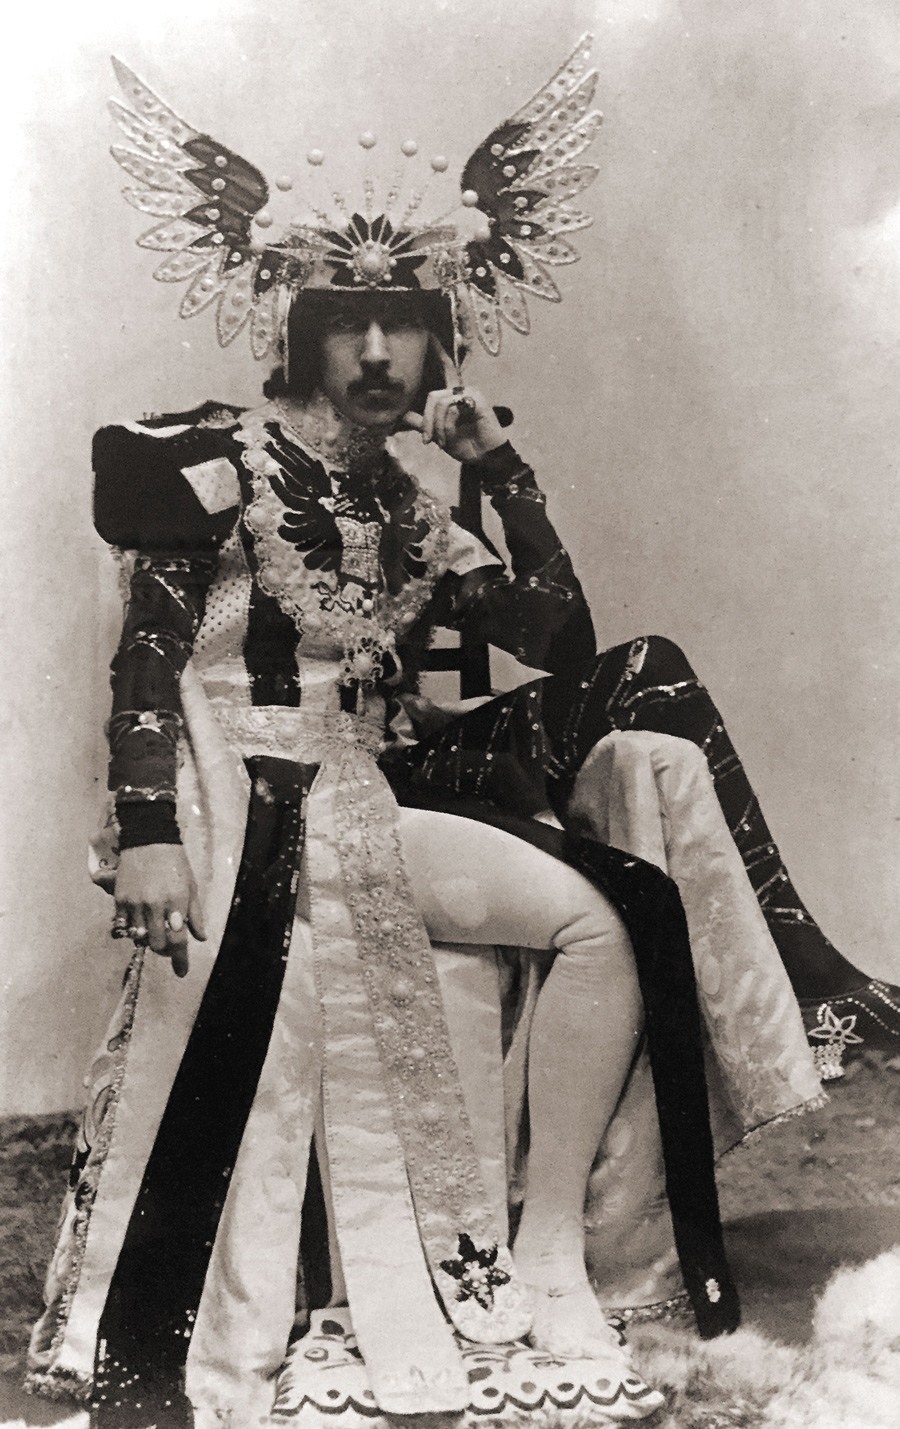 صورة شخصية لـ(هينري باجي) خامس (ماركيس) لـ(أنجليسي)، التقطت حوالي سنة 1900.